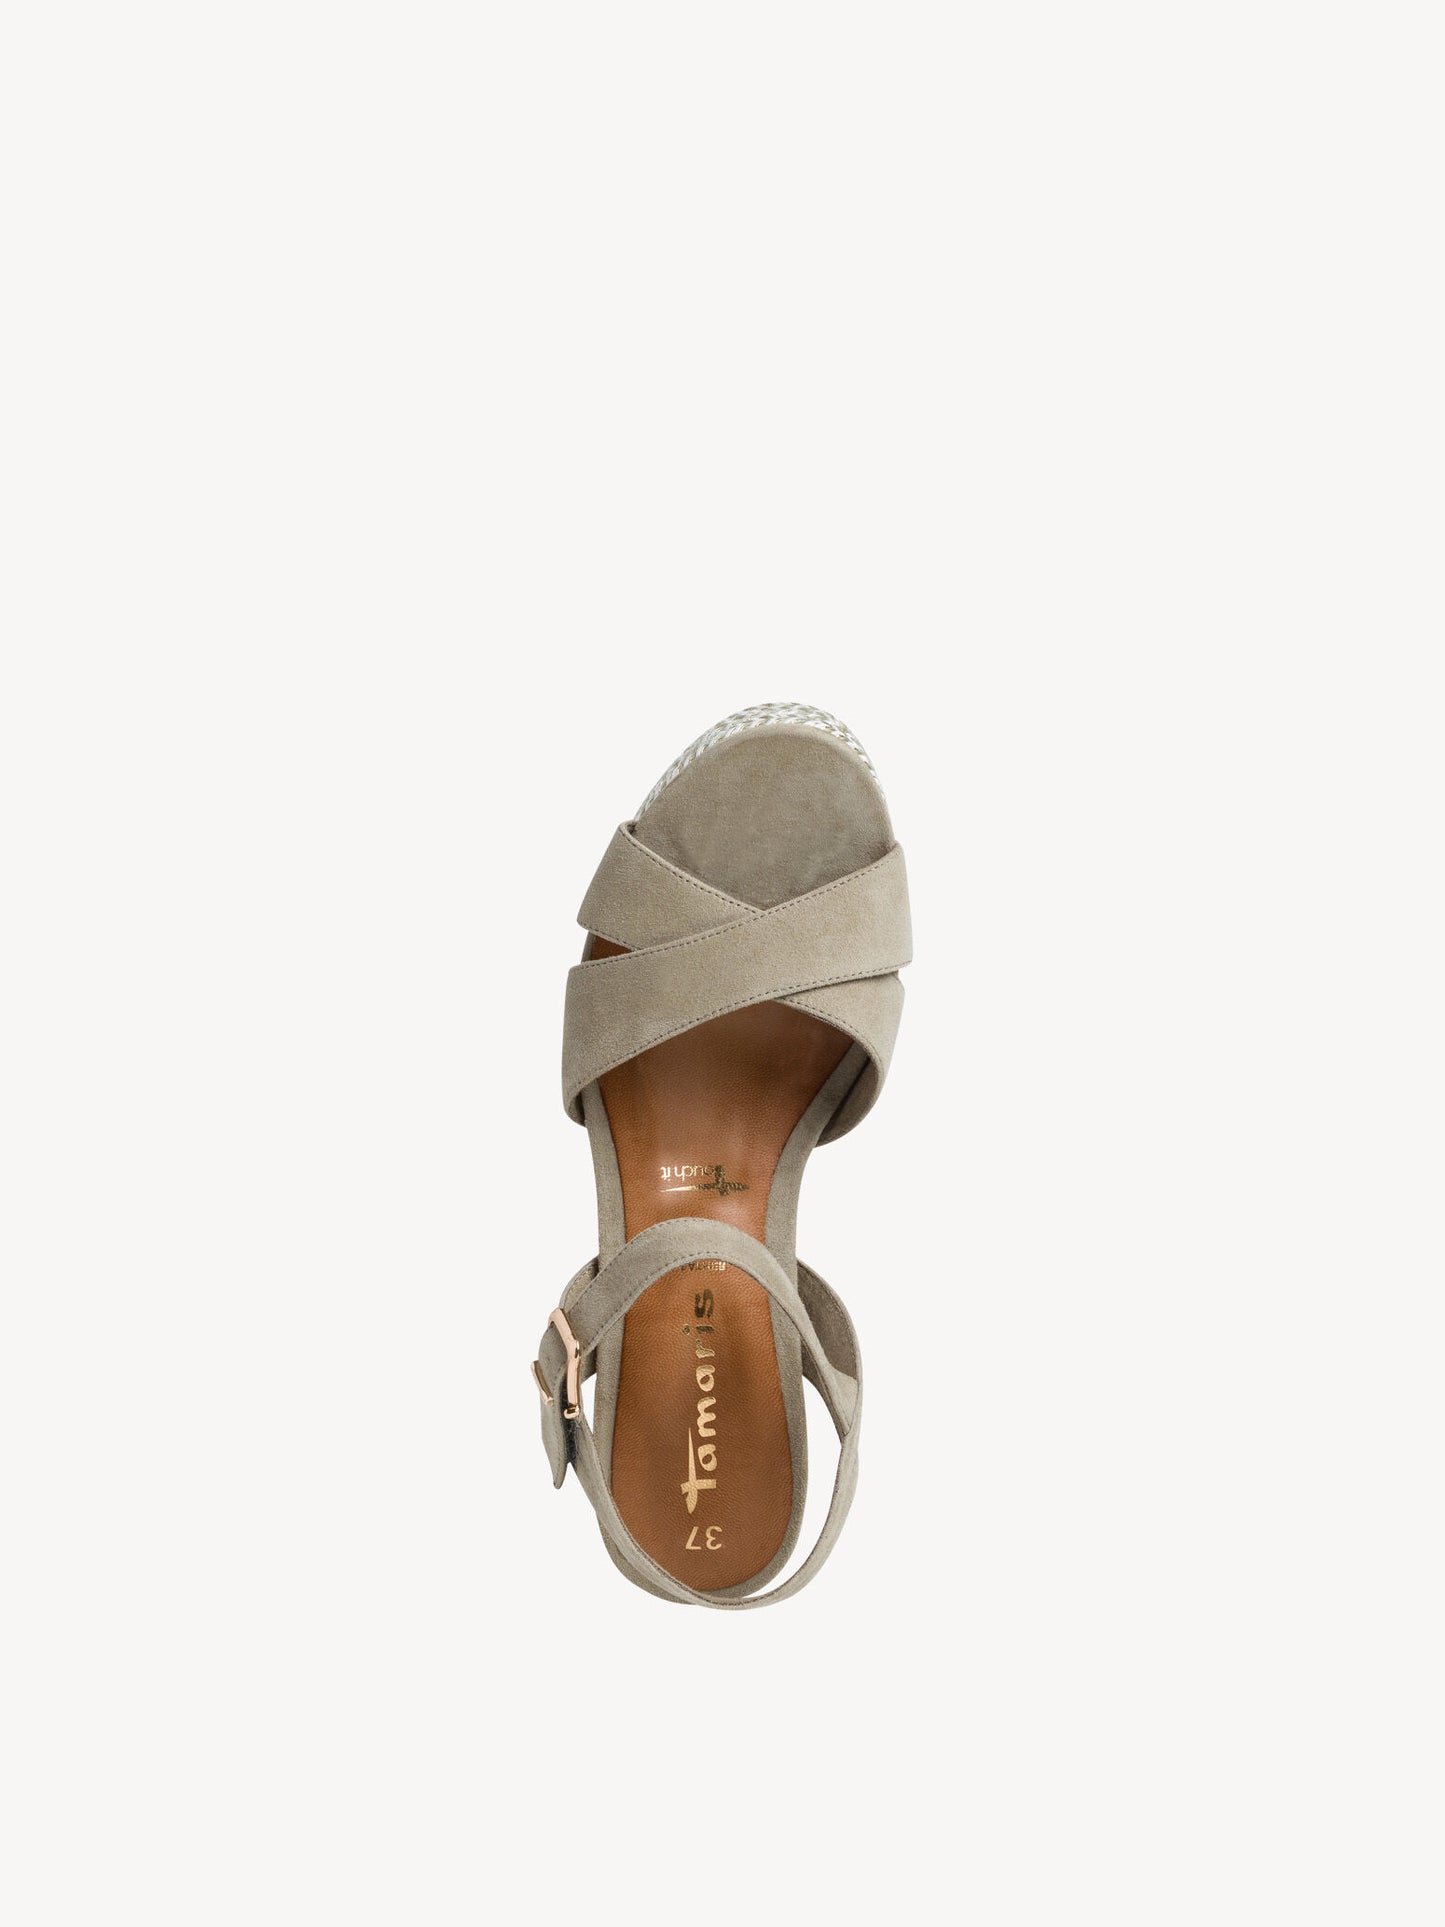 Tamaris Women's 1-28001-36 Leather Wedge Heel Sandals Pistacchio Green